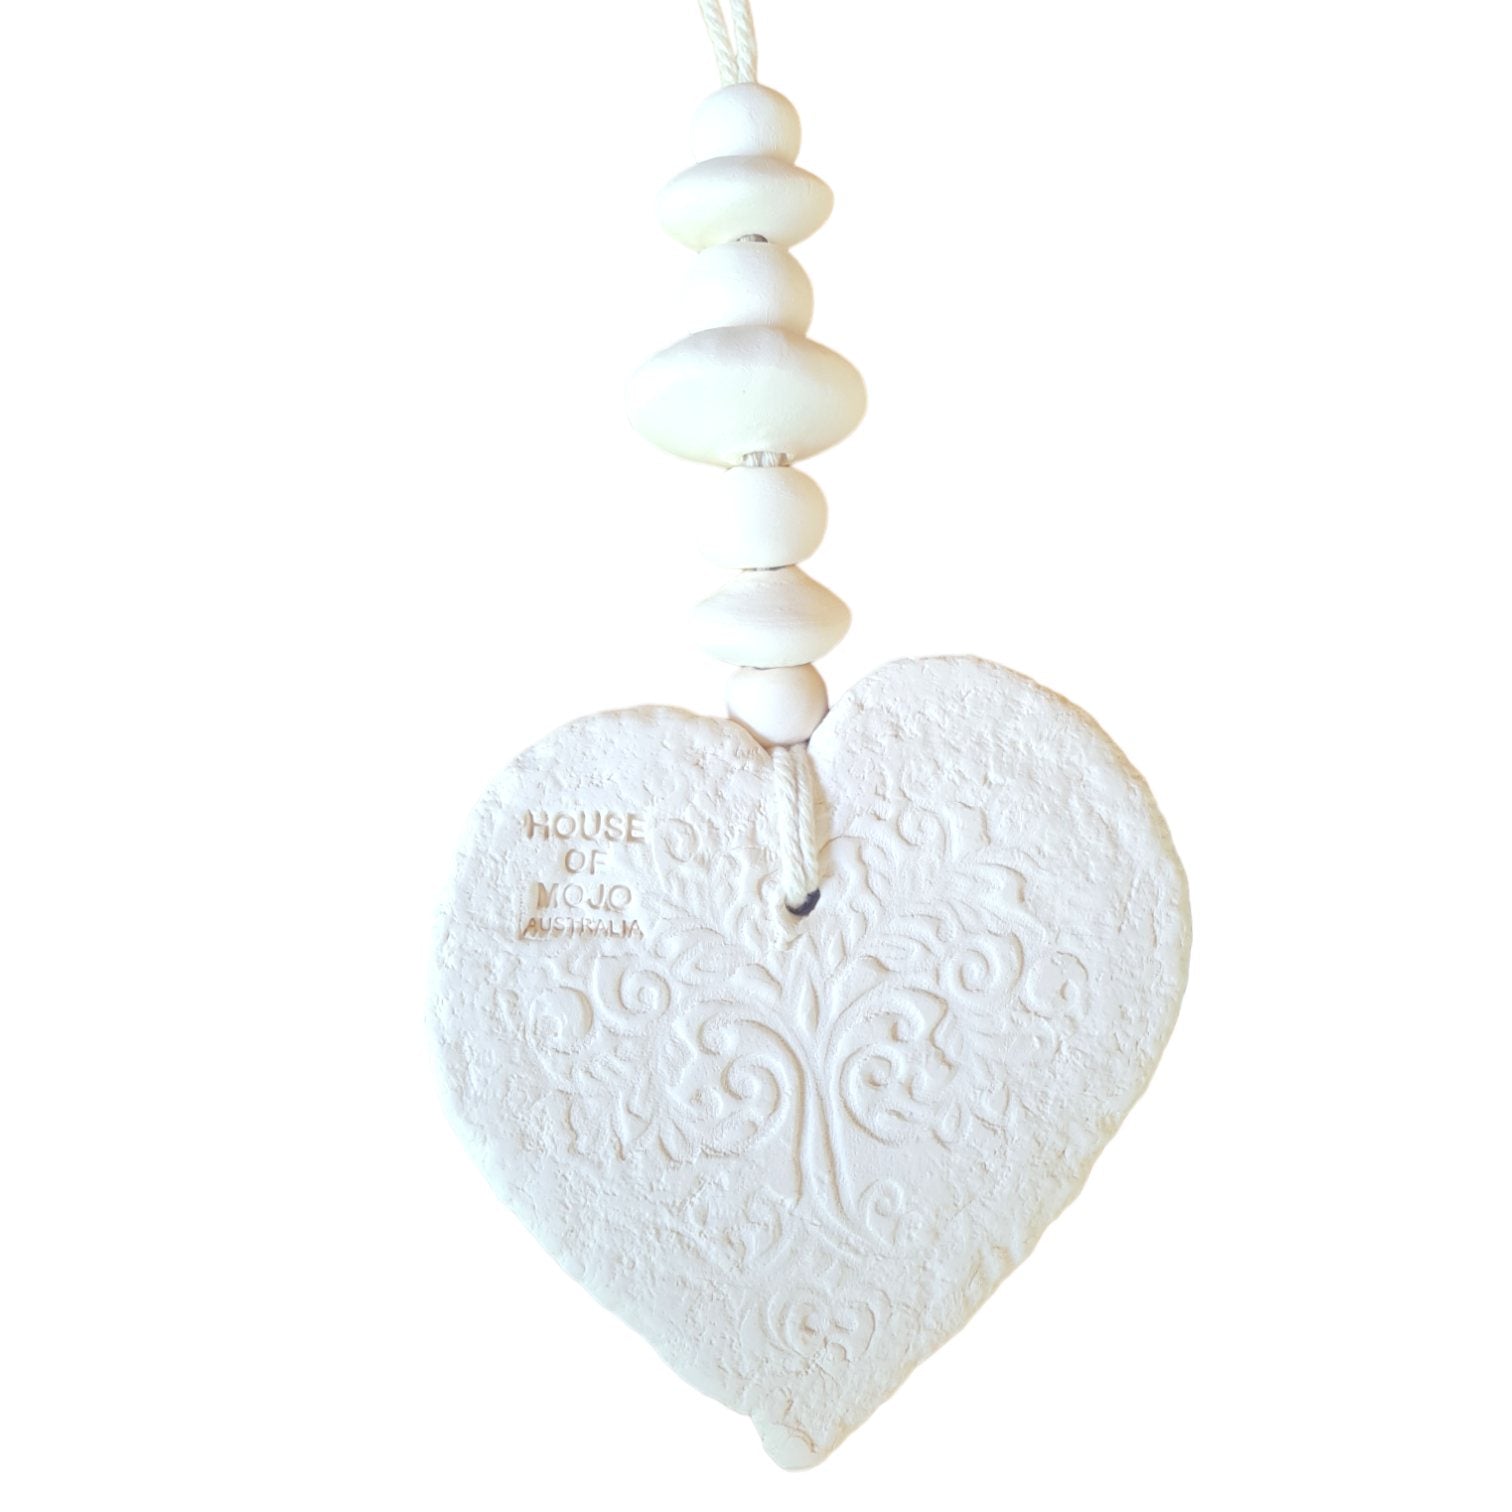 Fragranced Ceramic Hearts - Mojo's Fragranced Ceramic Hearts - Large - "Live, Love, Laugh"